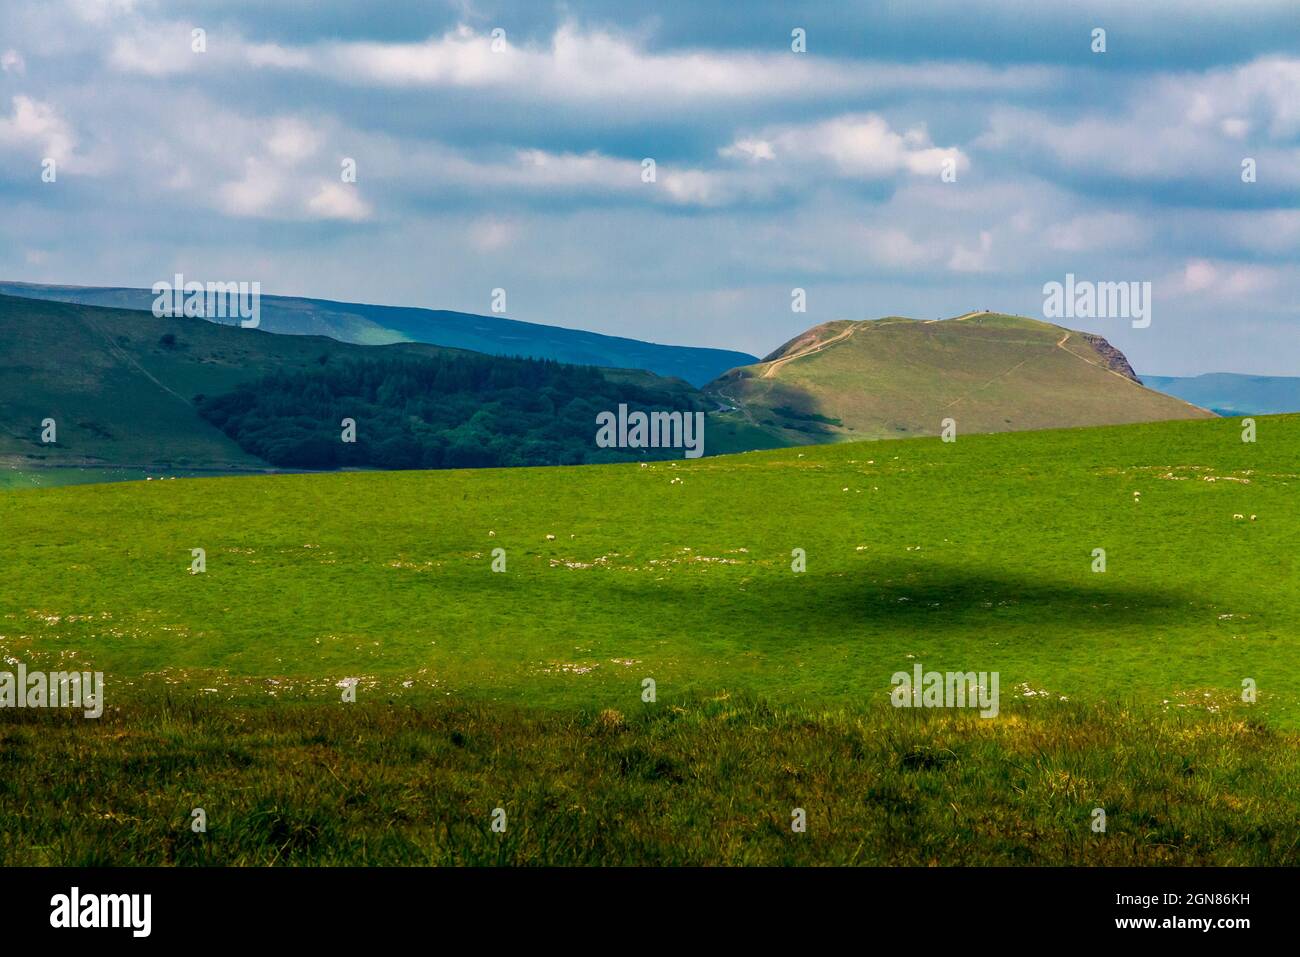 Paysage typique de Peak District avec MAM Tor en arrière-plan Peak District National Park Derbyshire Angleterre Royaume-Uni Banque D'Images